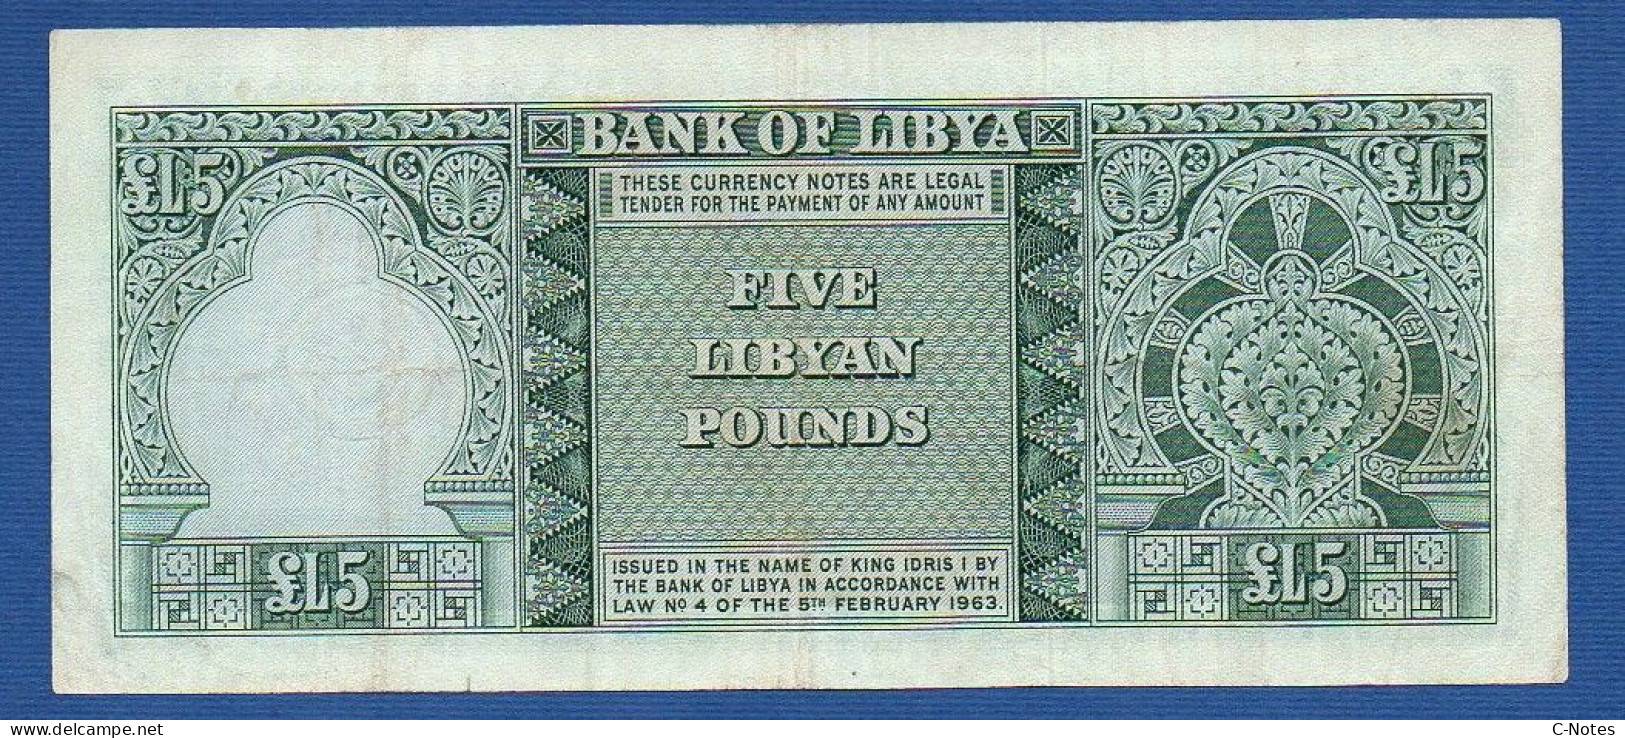 LIBYA - P.31 – 5 Pounds 1963 VF, Serie 5 B/15 571650 - Libya